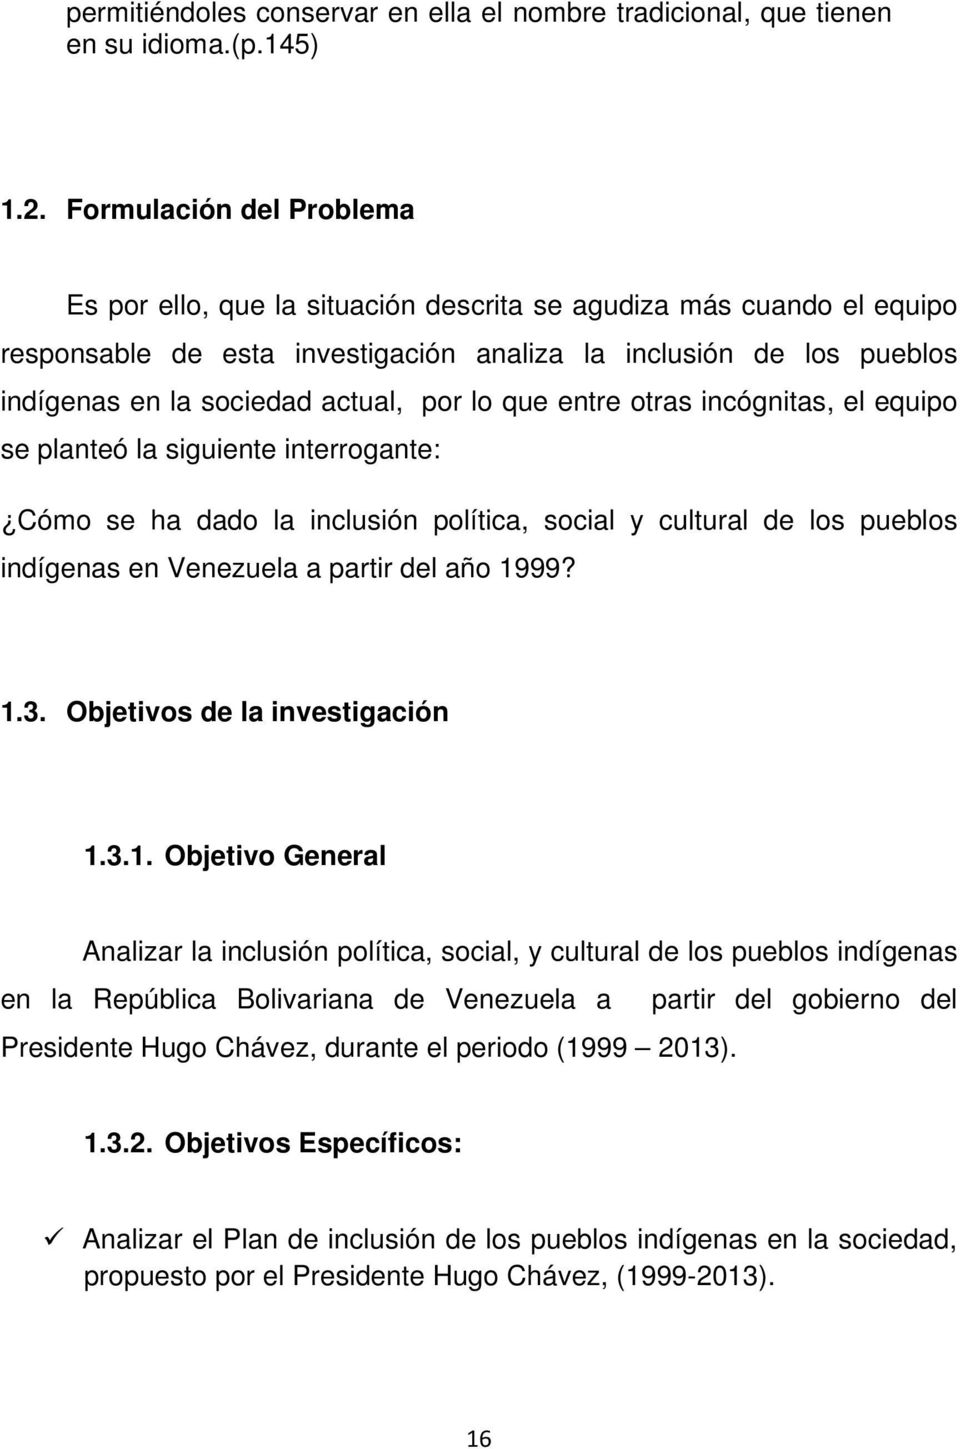 por lo que entre otras incógnitas, el equipo se planteó la siguiente interrogante: Cómo se ha dado la inclusión política, social y cultural de los pueblos indígenas en Venezuela a partir del año 1999?